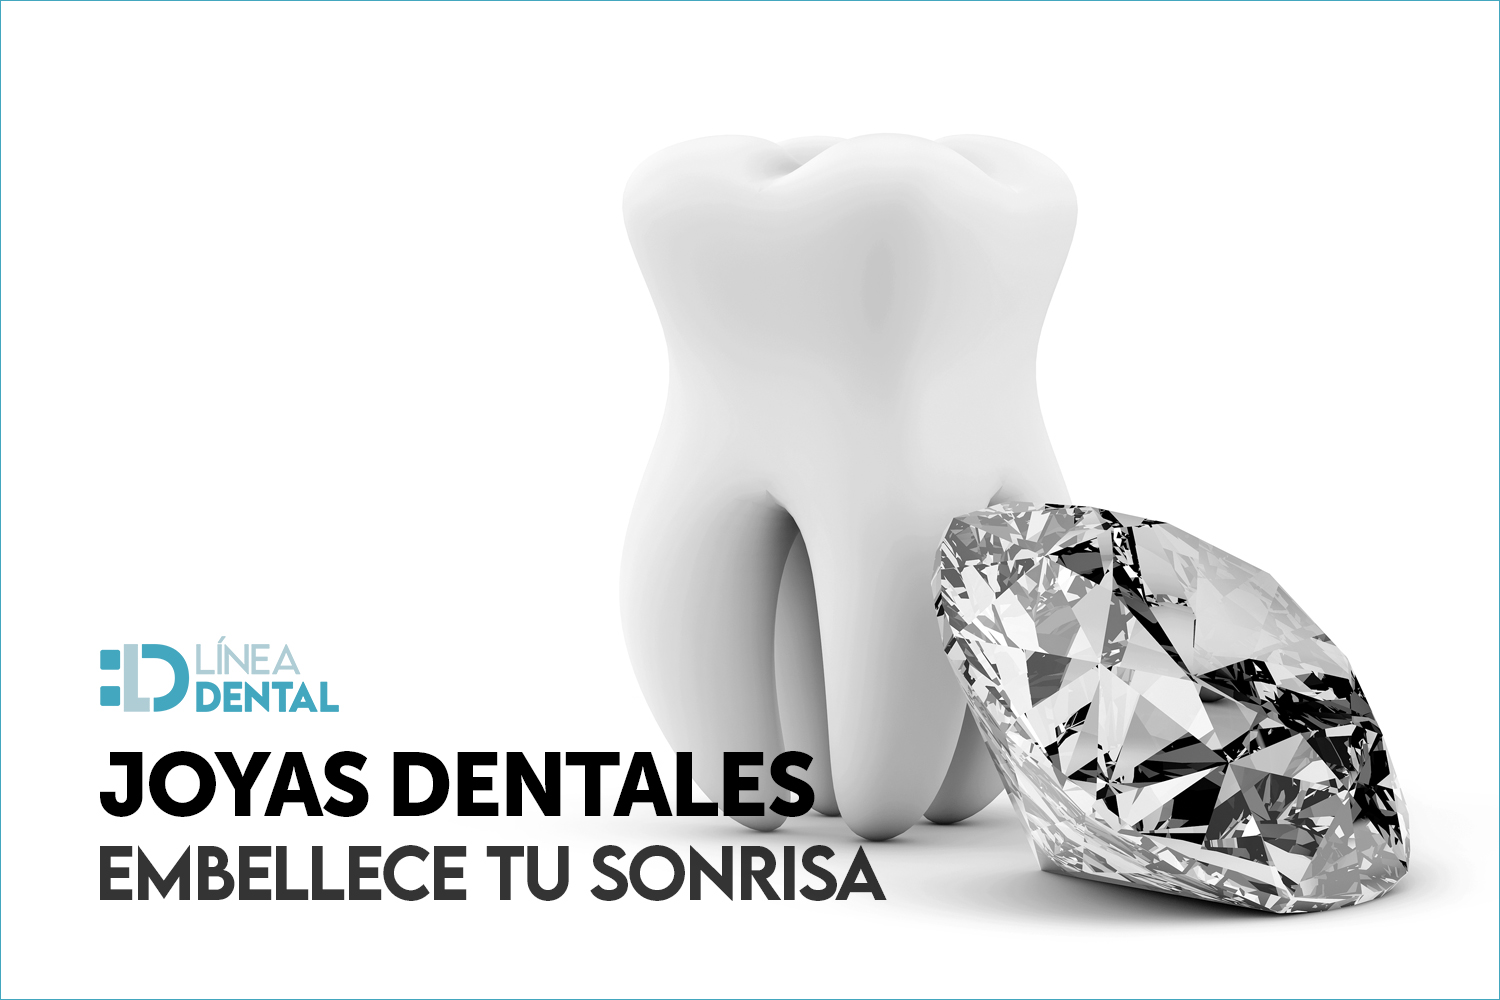 02-joyas-dentales-estetica-dentista-odontologo-linea-dental-ciudad-real-miguelturra